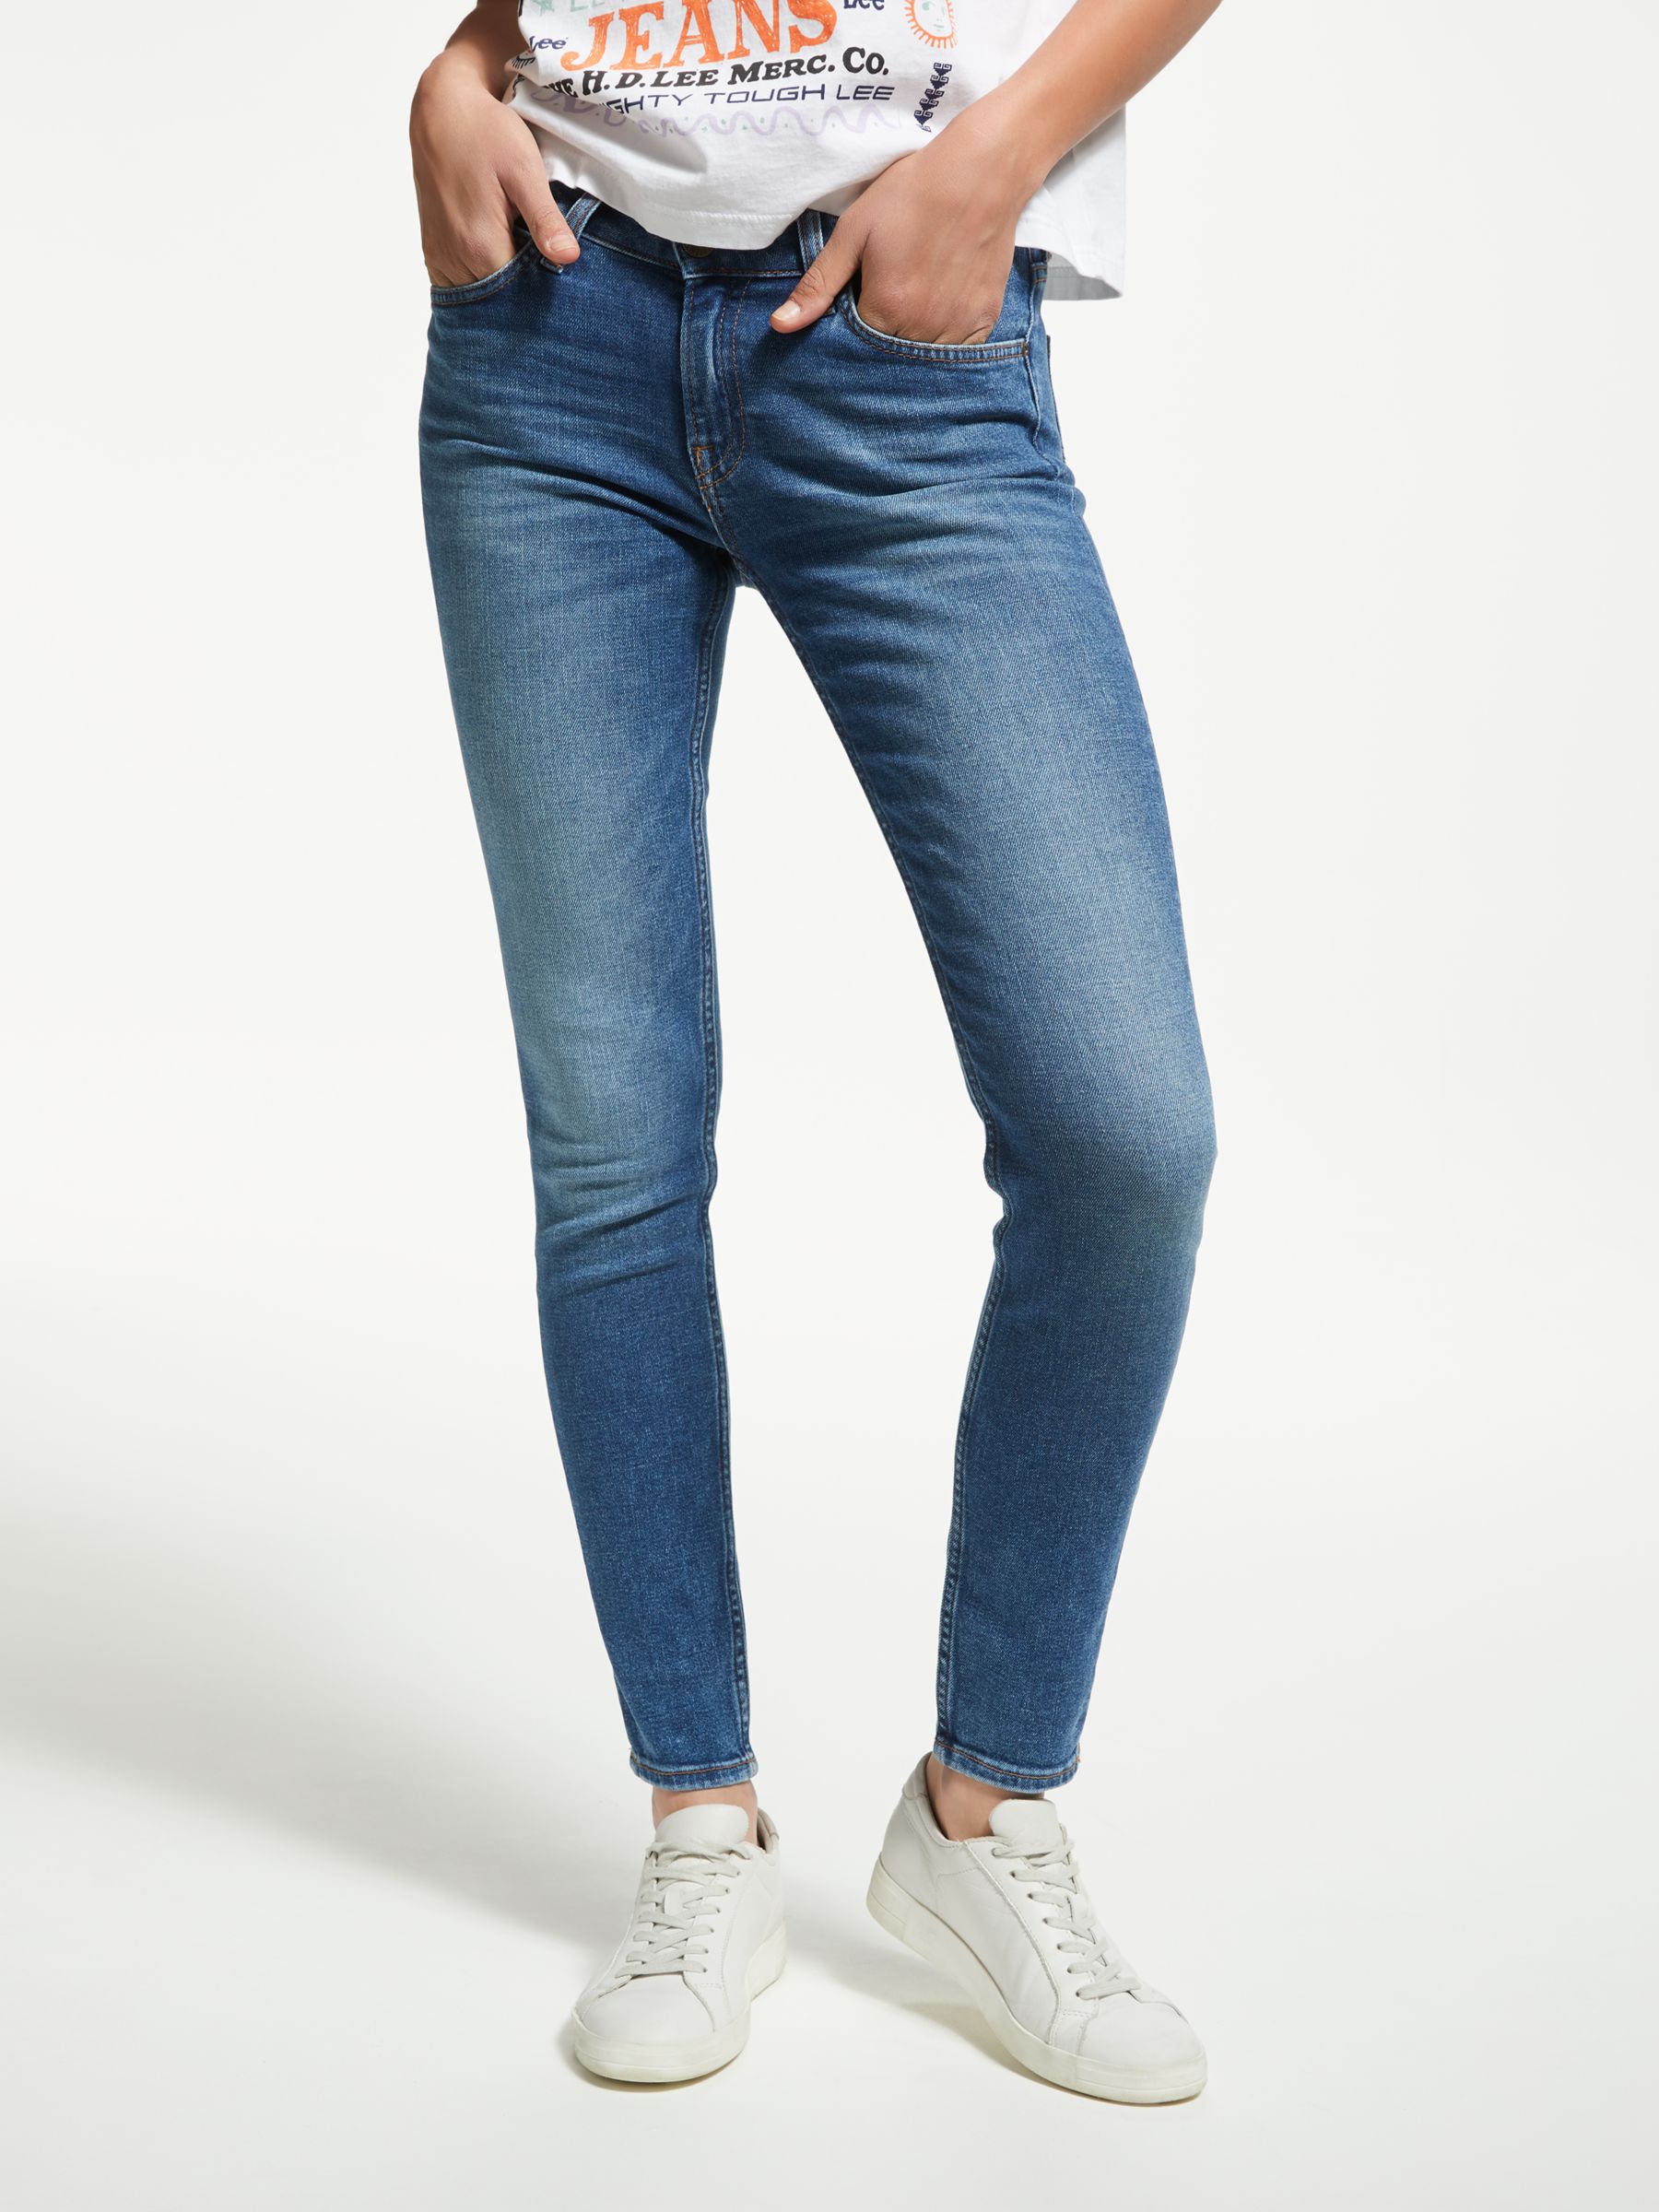 scarlett jeans